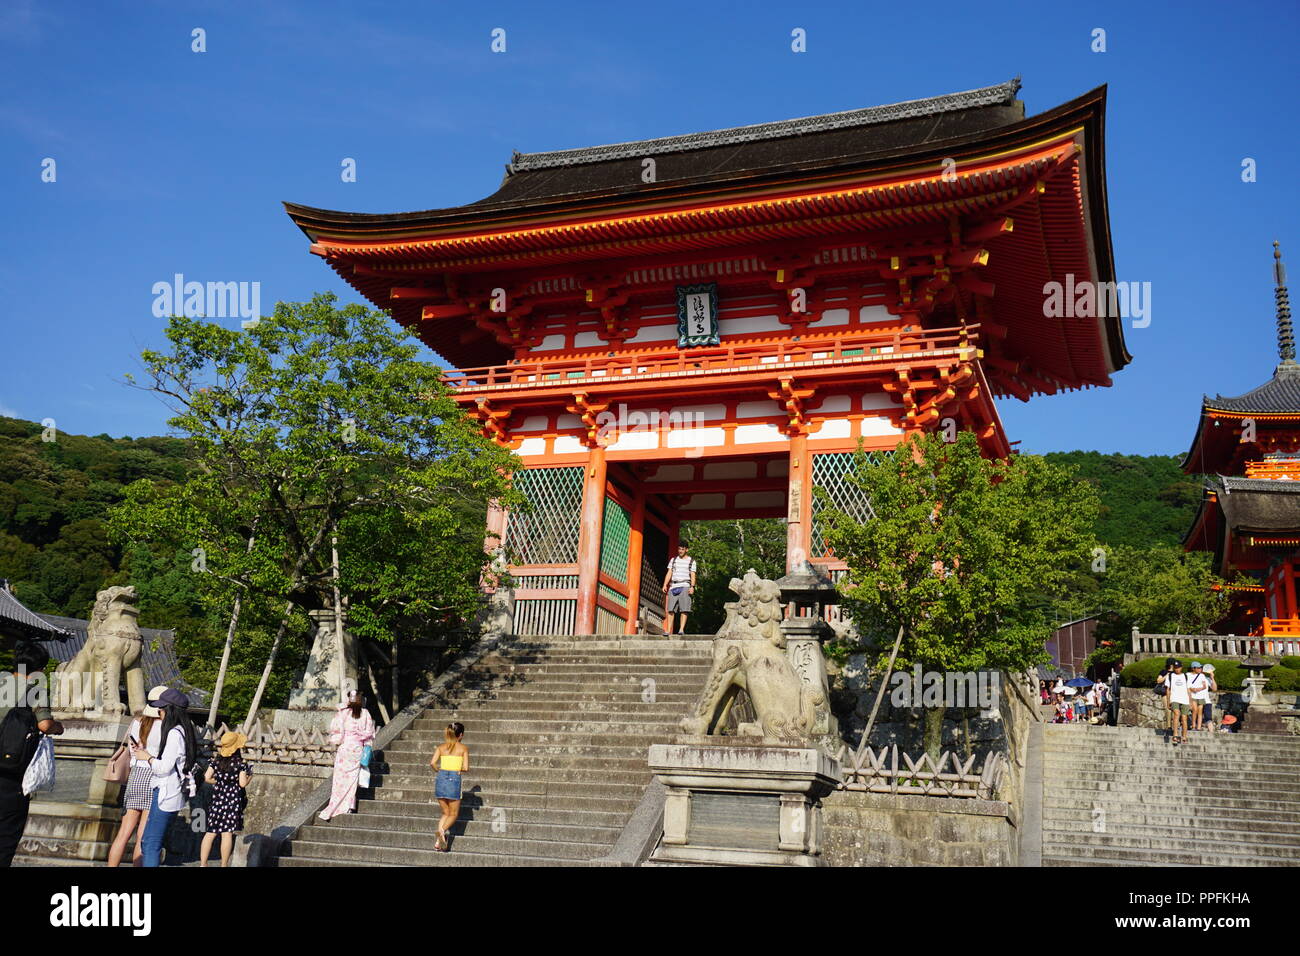 Kyoto, Japan - August 01, 2018: Die Nio-mon Tor von Deva Könige der Kiyomizu-dera Buddhistischen Tempel, ein UNESCO-Weltkulturerbe. Foto: Geo Stockfoto